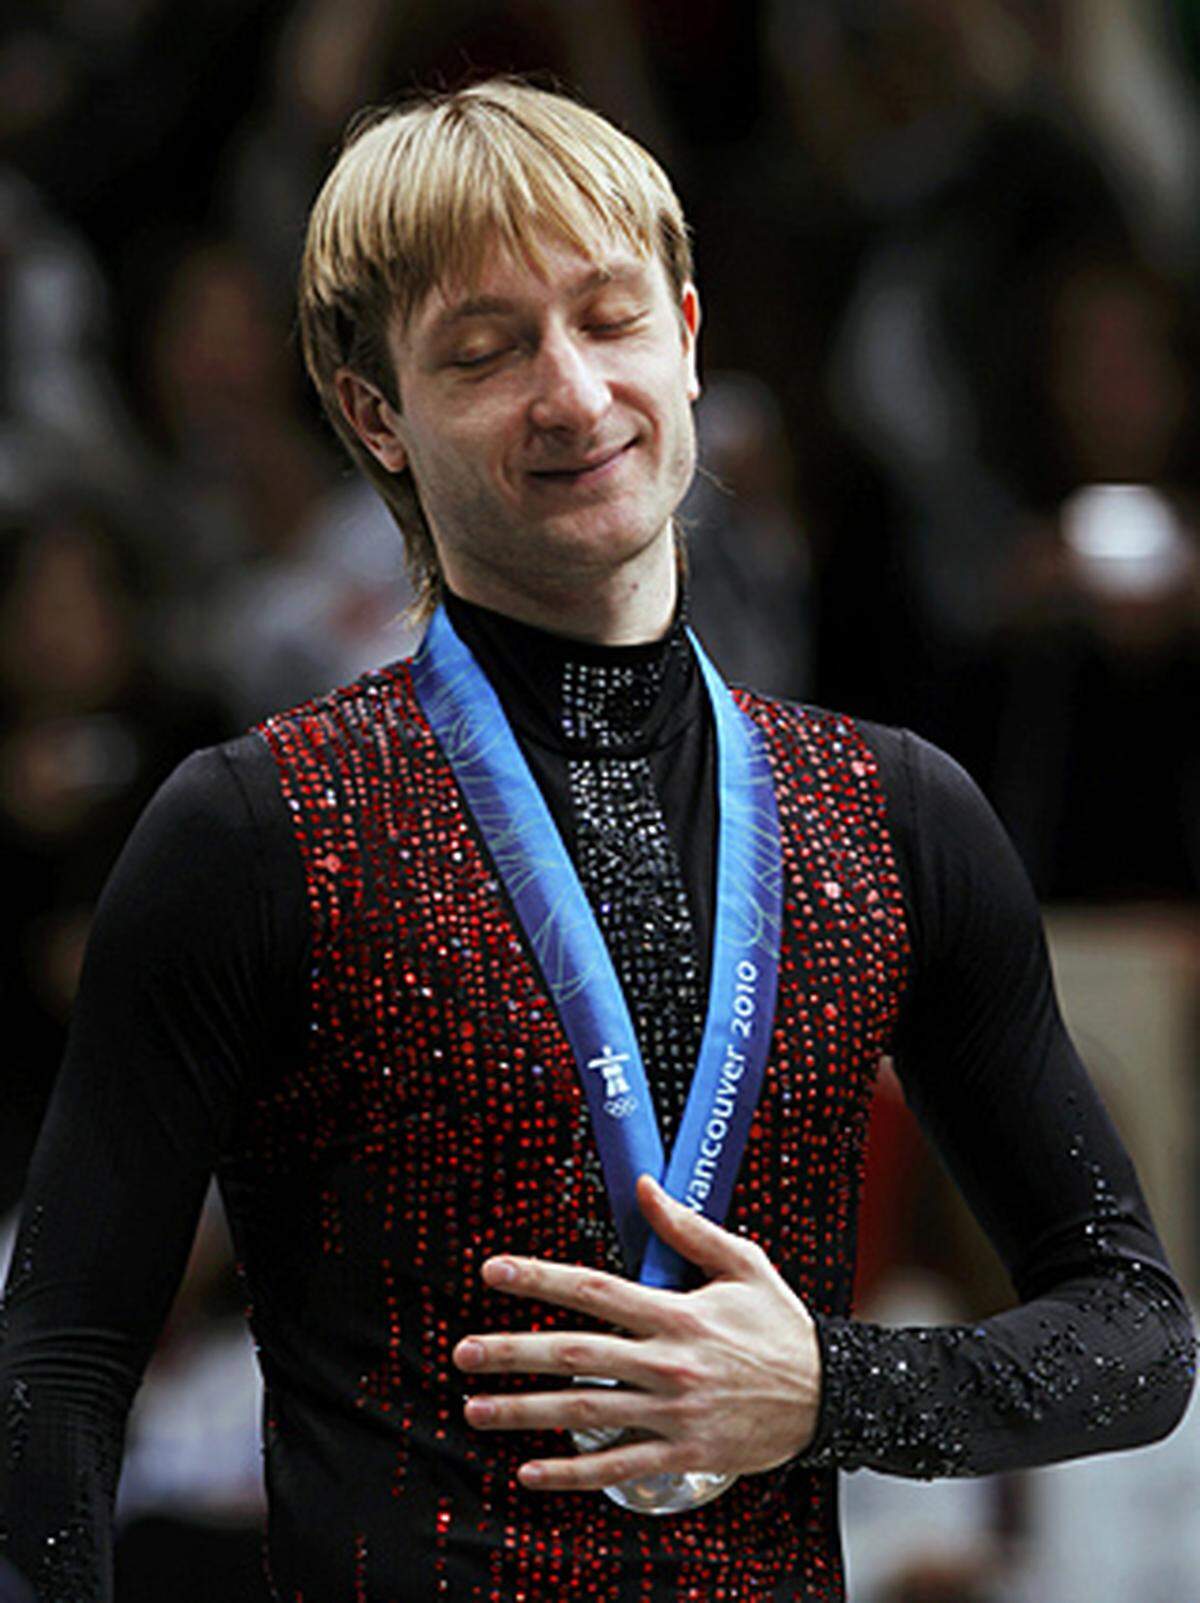 Der Springerkönig ist besiegt. Nichts ist aus der zweiten olympischen Goldmedaille für den russischen Eiskunstläufer Jewgenij Pluschenko geworden.